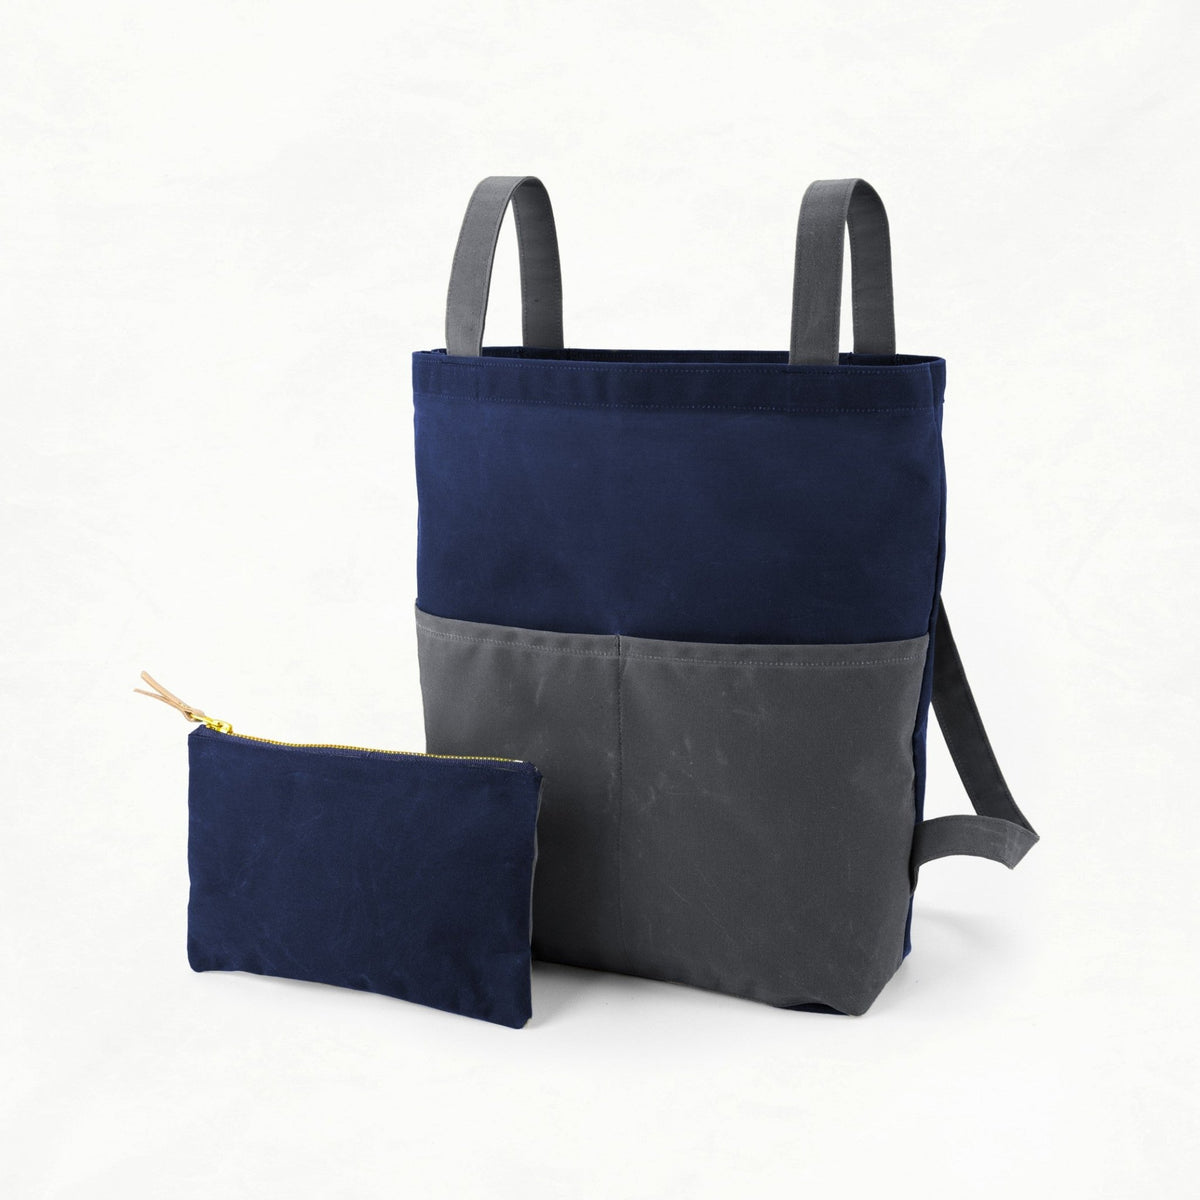 Belmont - Navy Bag Maker Kit - BEL - NAVY - GRAY - Maker Kit - Klum House